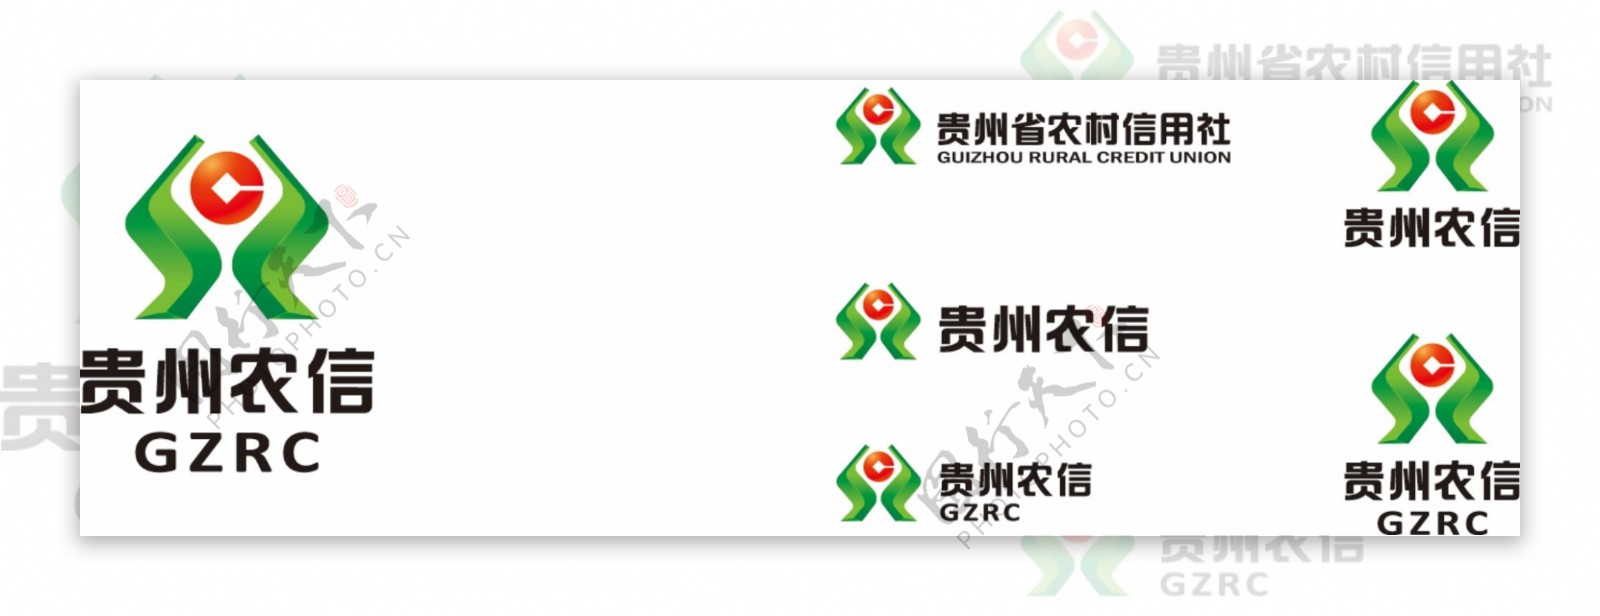 贵州省农村信用社logo组合